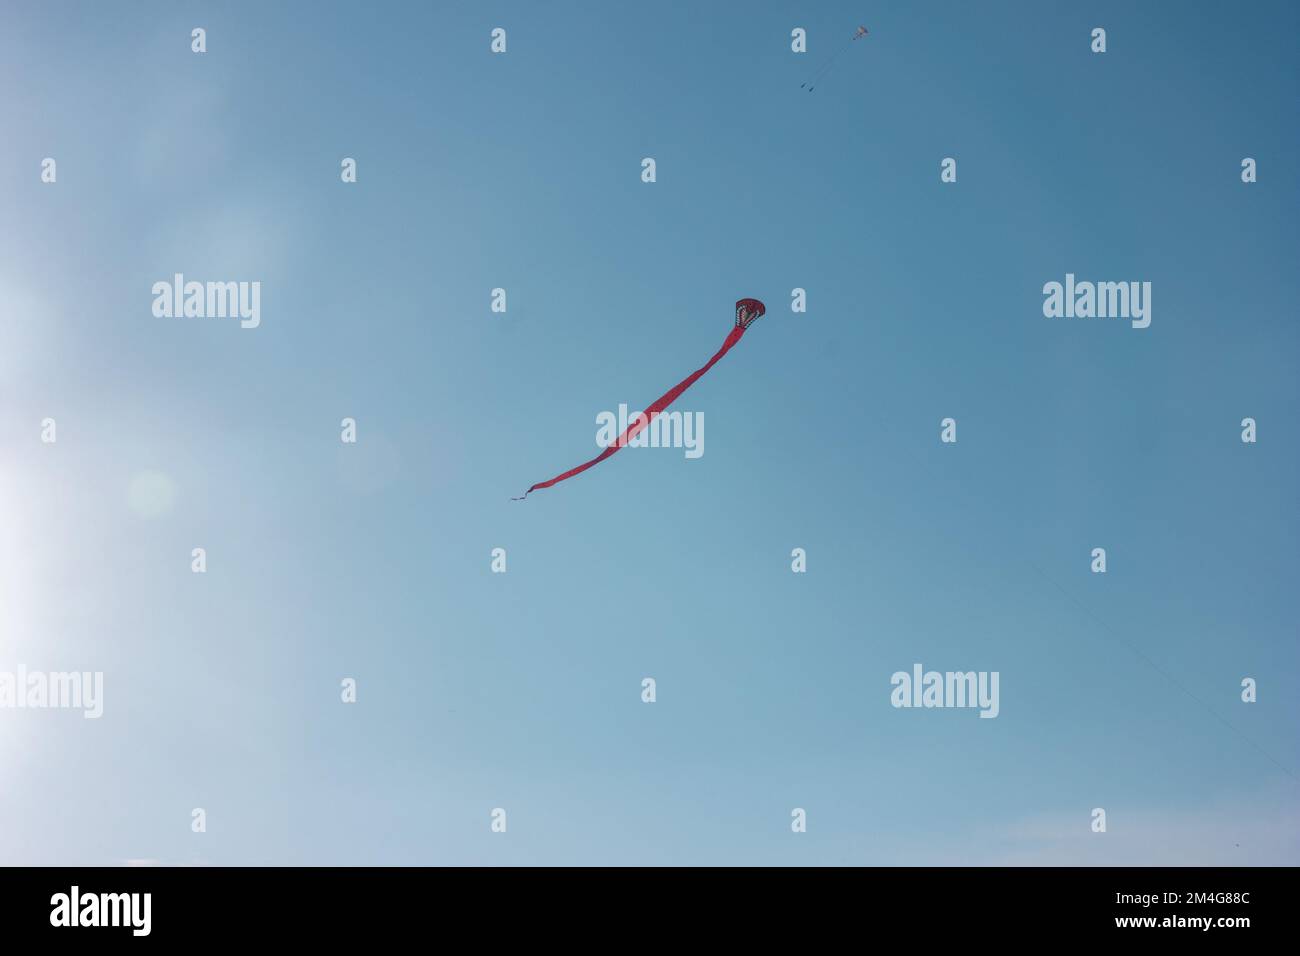 Aquilone rosso che vola nel cielo blu, aquilone coda lunga nel cielo, concetto di libertà, vista dal basso Foto Stock